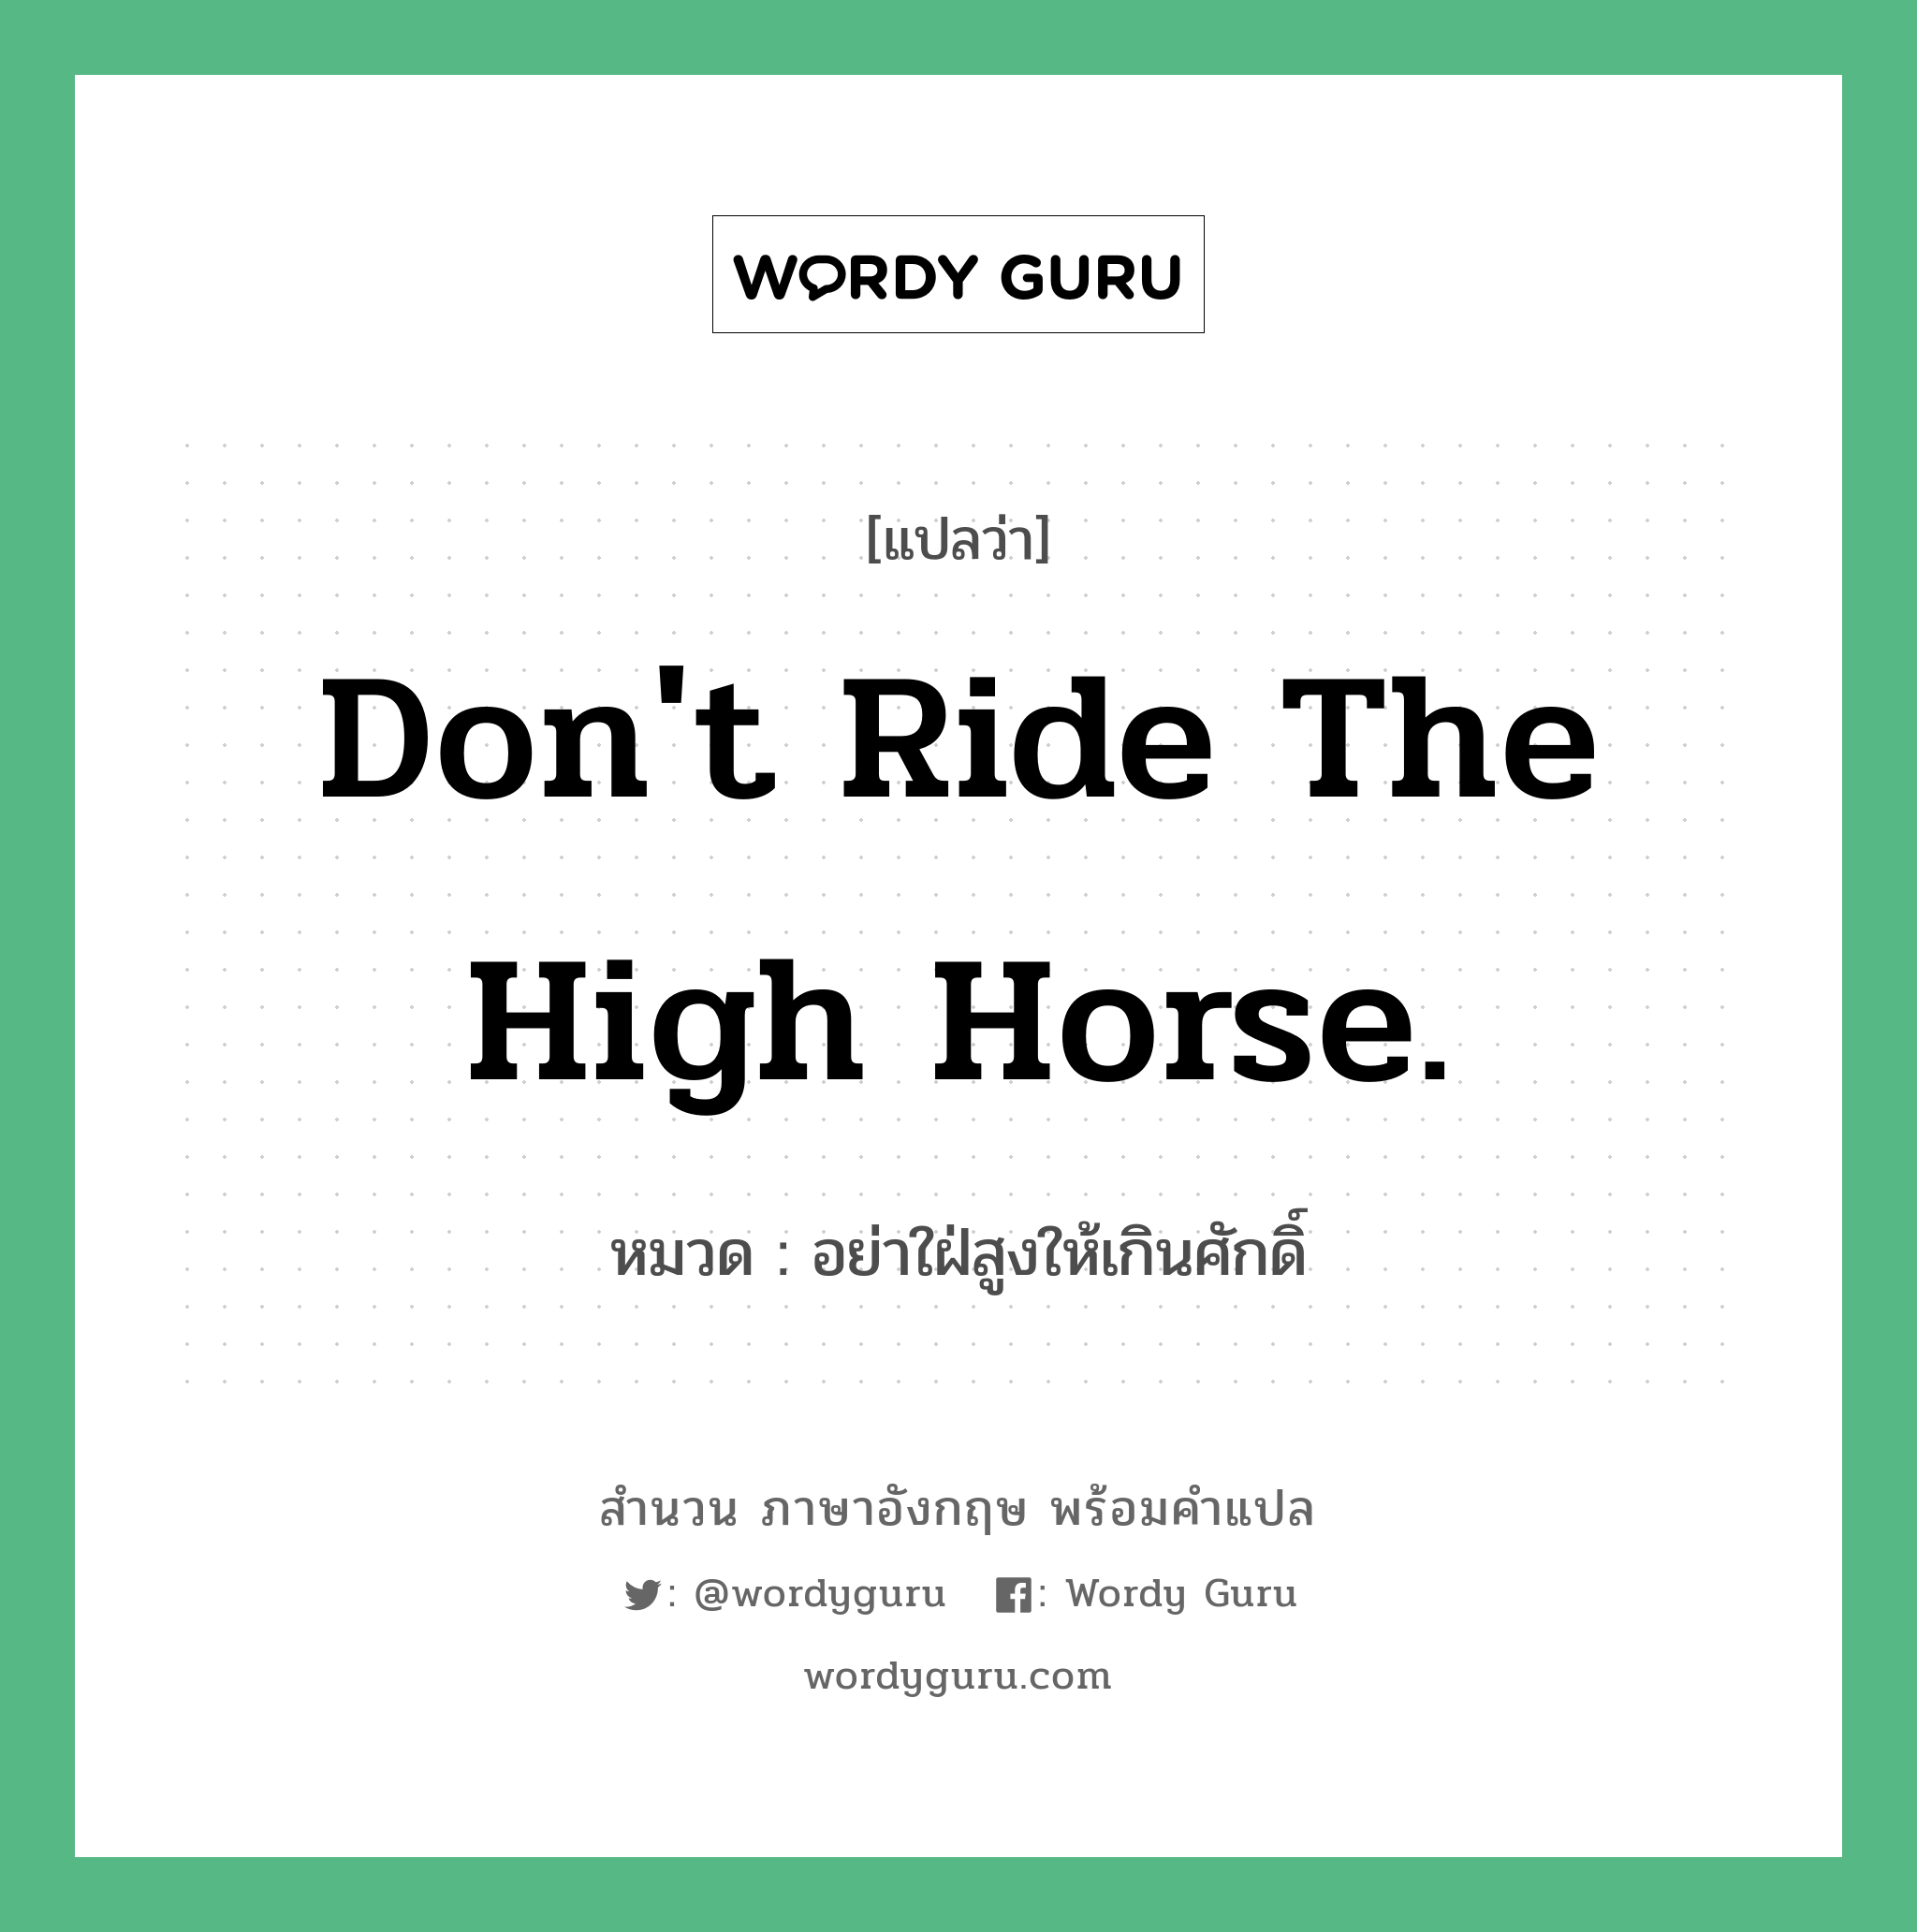 Don't ride the high horse. แปลว่า? คำศัพท์ในกลุ่มประเภท คำสุภาษิต ภาษาอังกฤษ, สำนวนภาษาอังกฤษ Don't ride the high horse. หมวด อย่าใฝ่สูงให้เกินศักดิ์ คำสุภาษิต ภาษาอังกฤษ หมวด คำสุภาษิต ภาษาอังกฤษ